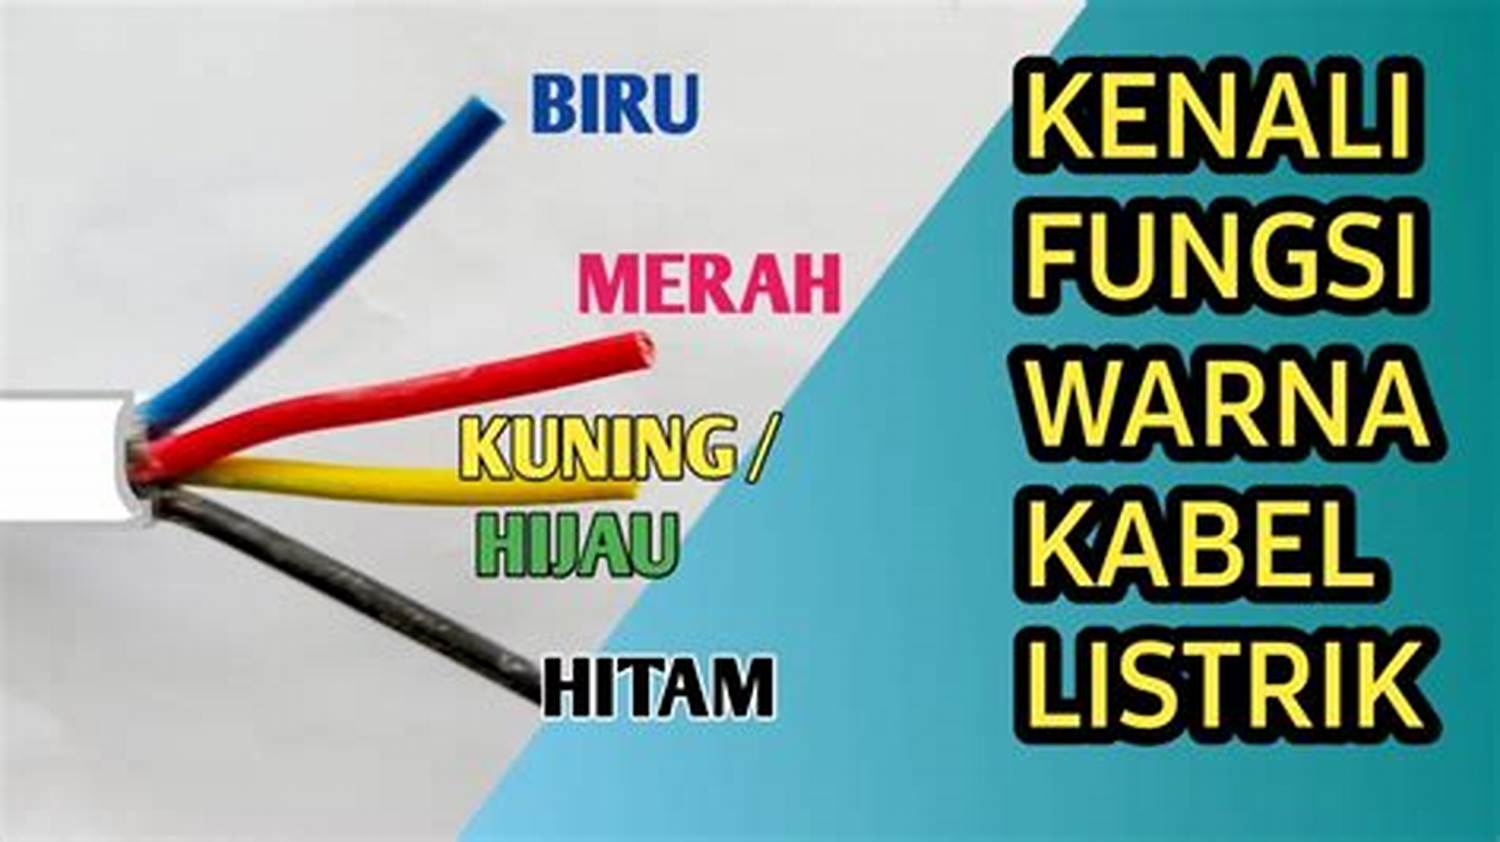 Warna Kabel Listrik di Indonesia: Apa Artinya dan Bagaimana Mengenalinya?